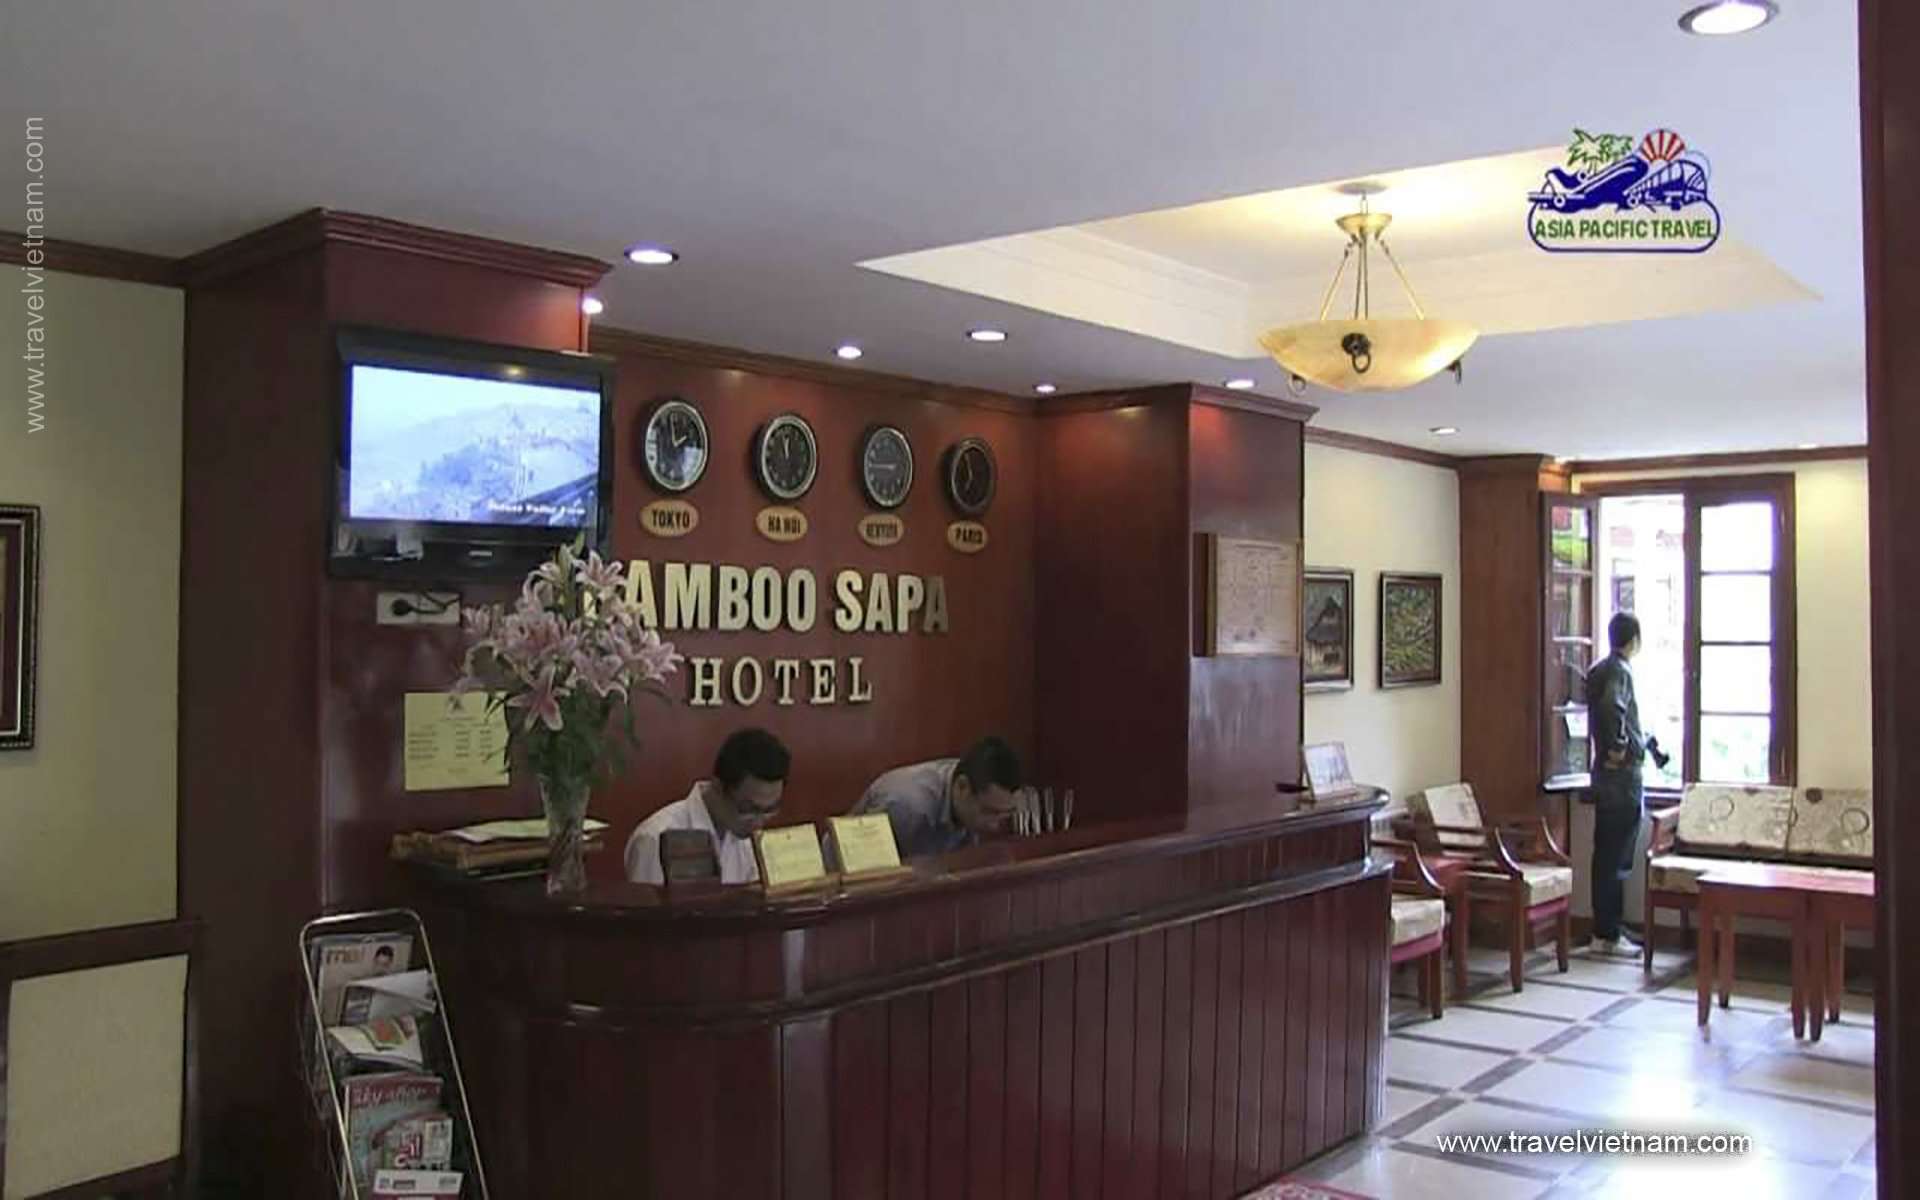 Bamboo Sapa Hotel